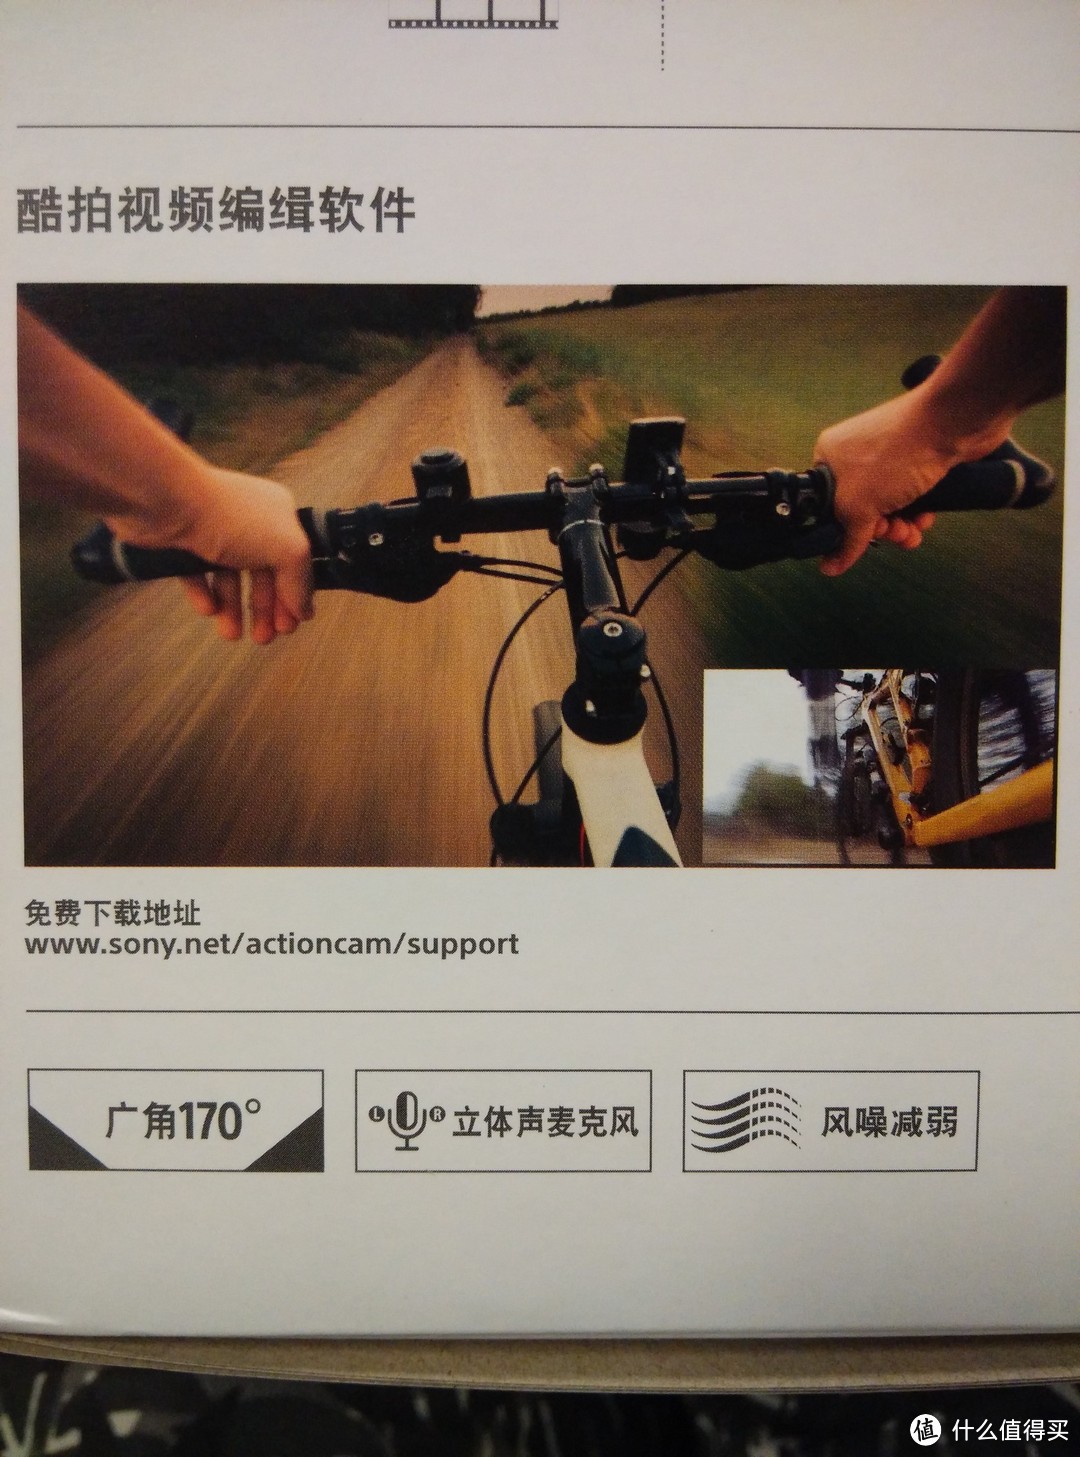 降风噪的广告，据骑友论坛的人说，这个功能挺实用的。GoPro貌似没有。